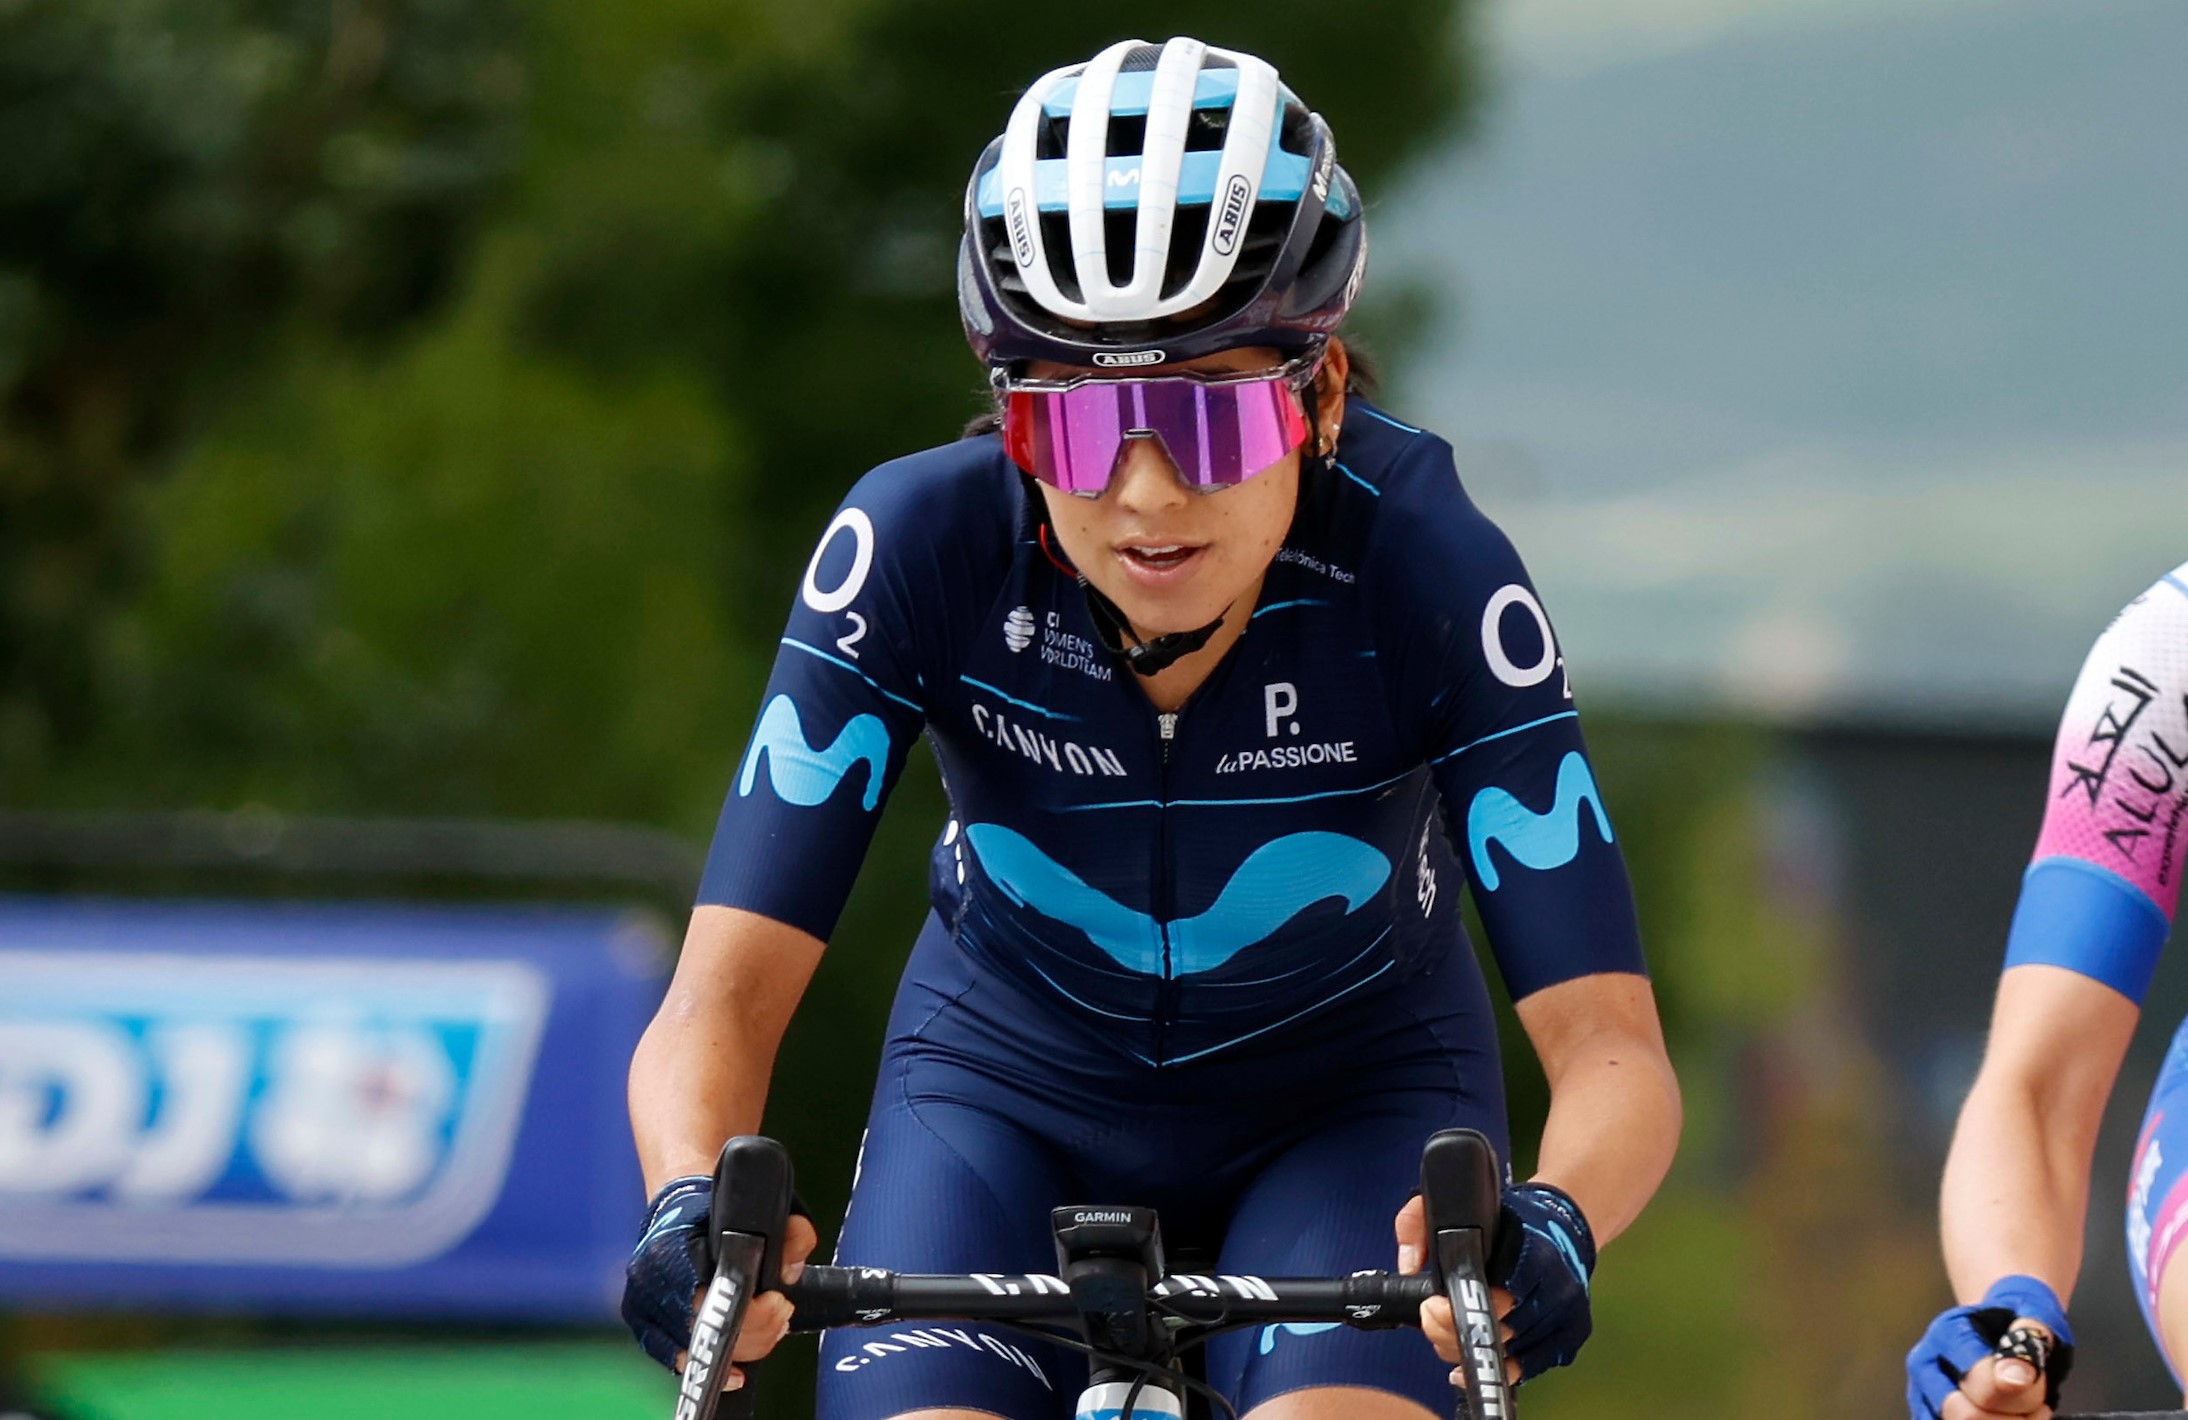 Paula Patiño consiguió su mejor resultado en el ciclismo europeo